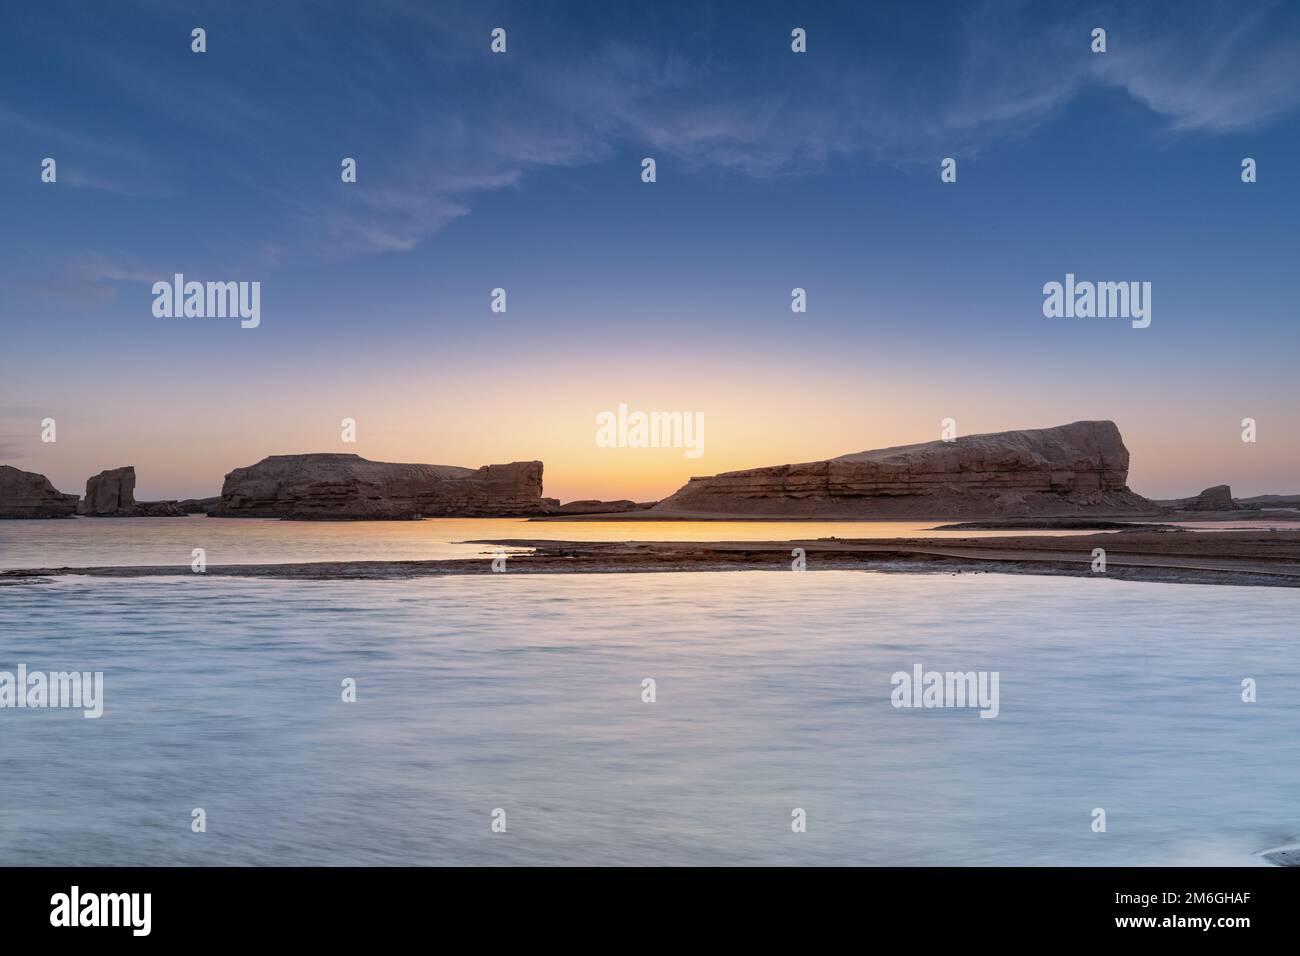 Yardang landform on water in sunset Stock Photo